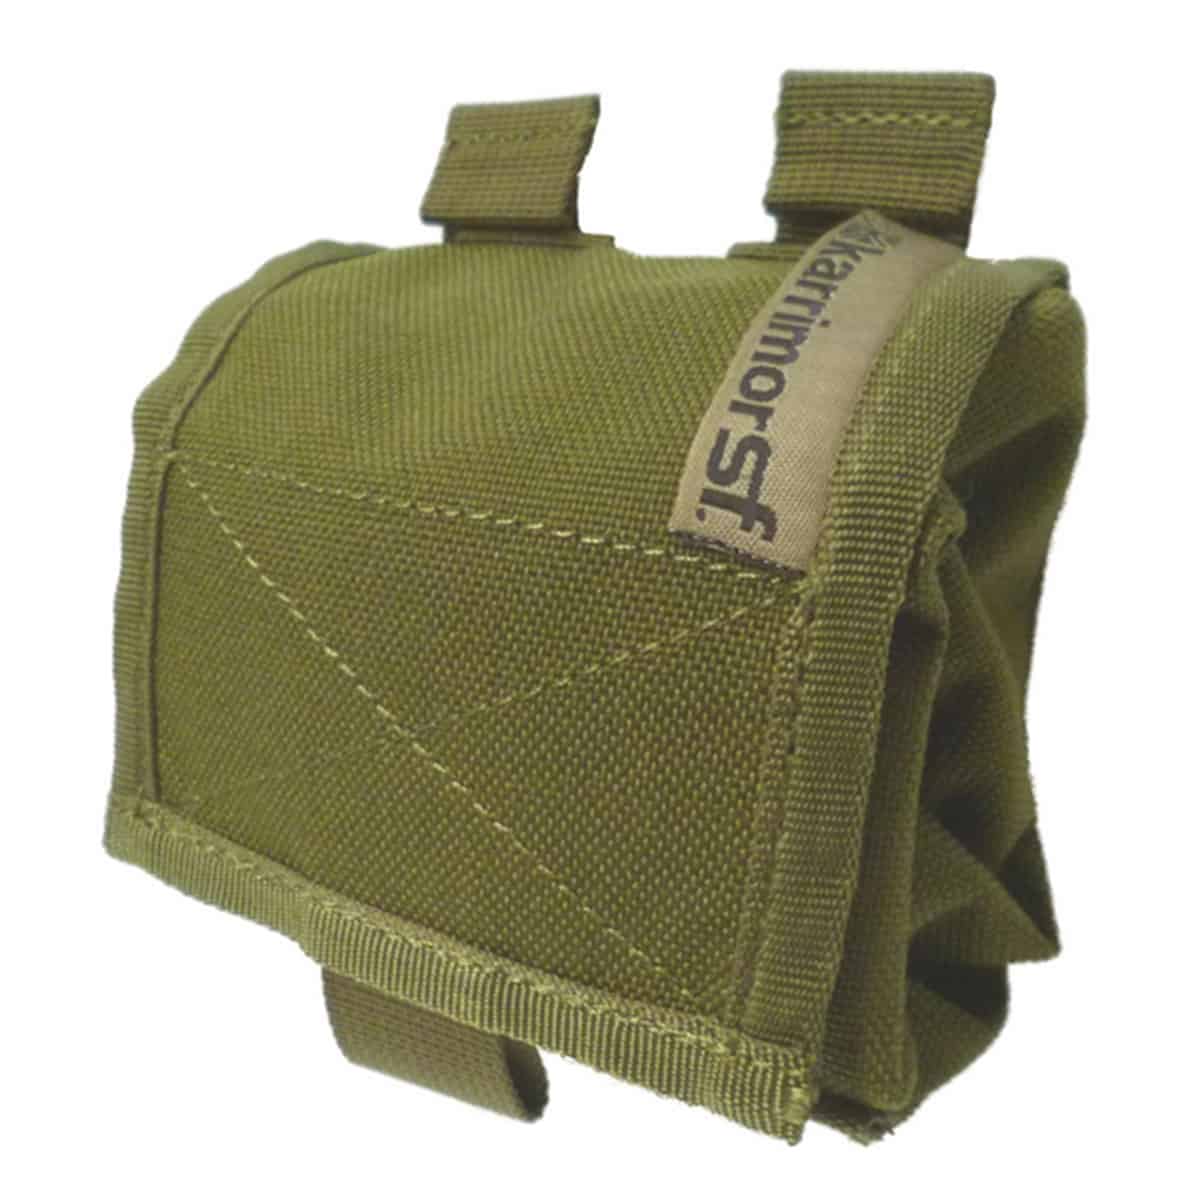 Odkrijte Karrimor SF zložljivo vojaško odlagalno torbico Predator Roll up QR-Modular. Vsestranska, robustna in prilagodljiva torbica za vojaške enote, specializirane policijske oddelke in outdoor entuziaste. Organizirajte in varno shranjujte svojo opremo s to torbico, ki se zvije, ko ni v uporabi. Izdelana iz visokokakovostnih materialov za dolgotrajno uporabo. Prepričajte se sami!